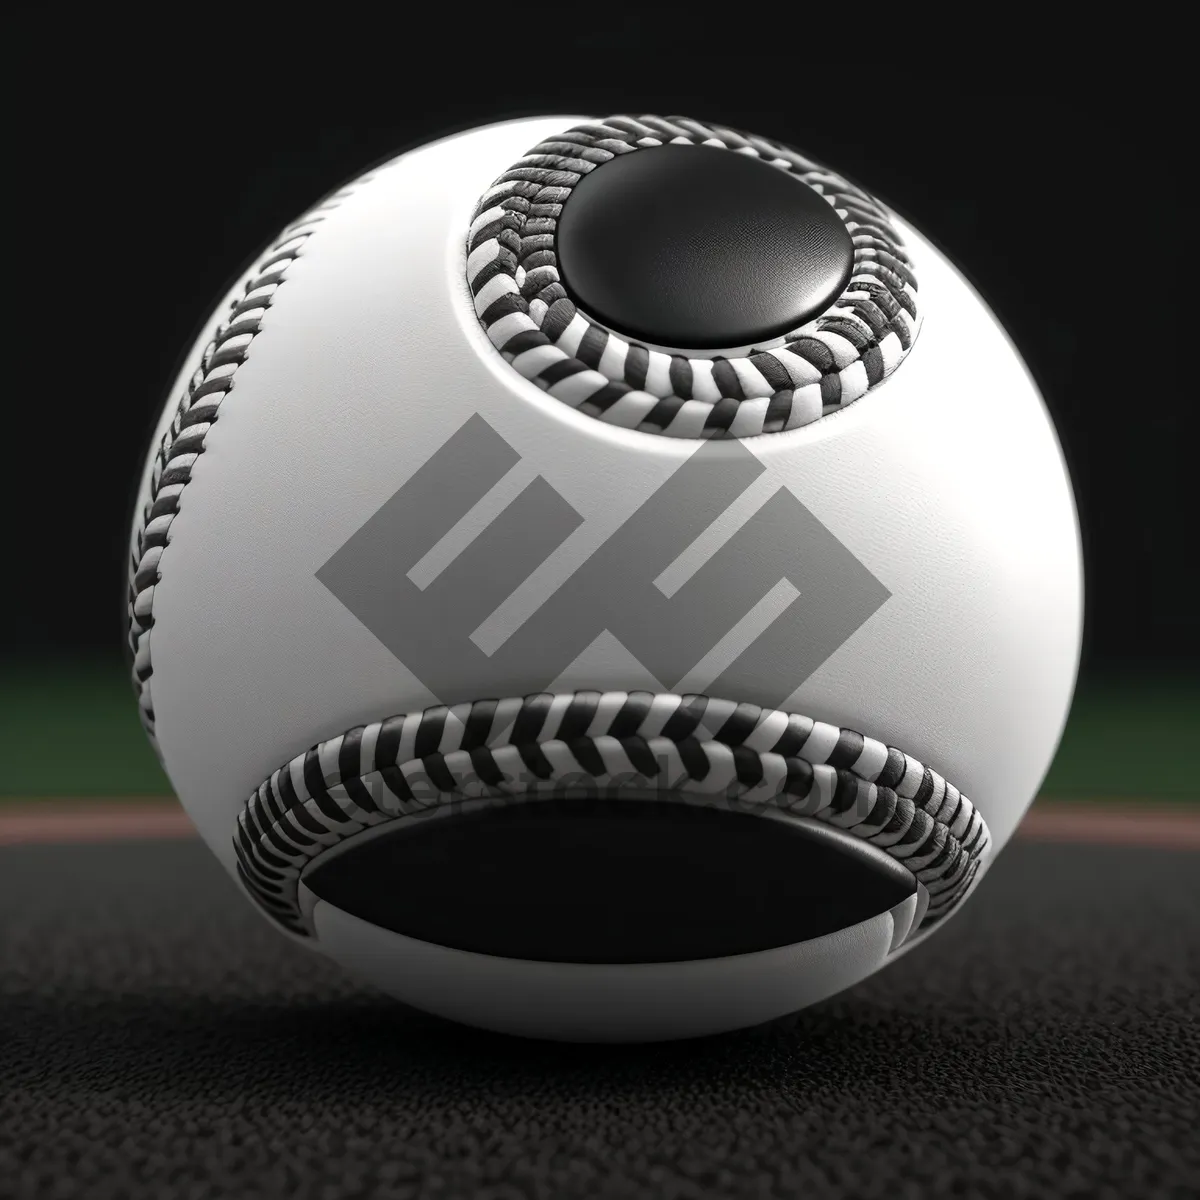 Picture of Versatile Game Equipment - Ball, Baseball, Soccer, Football